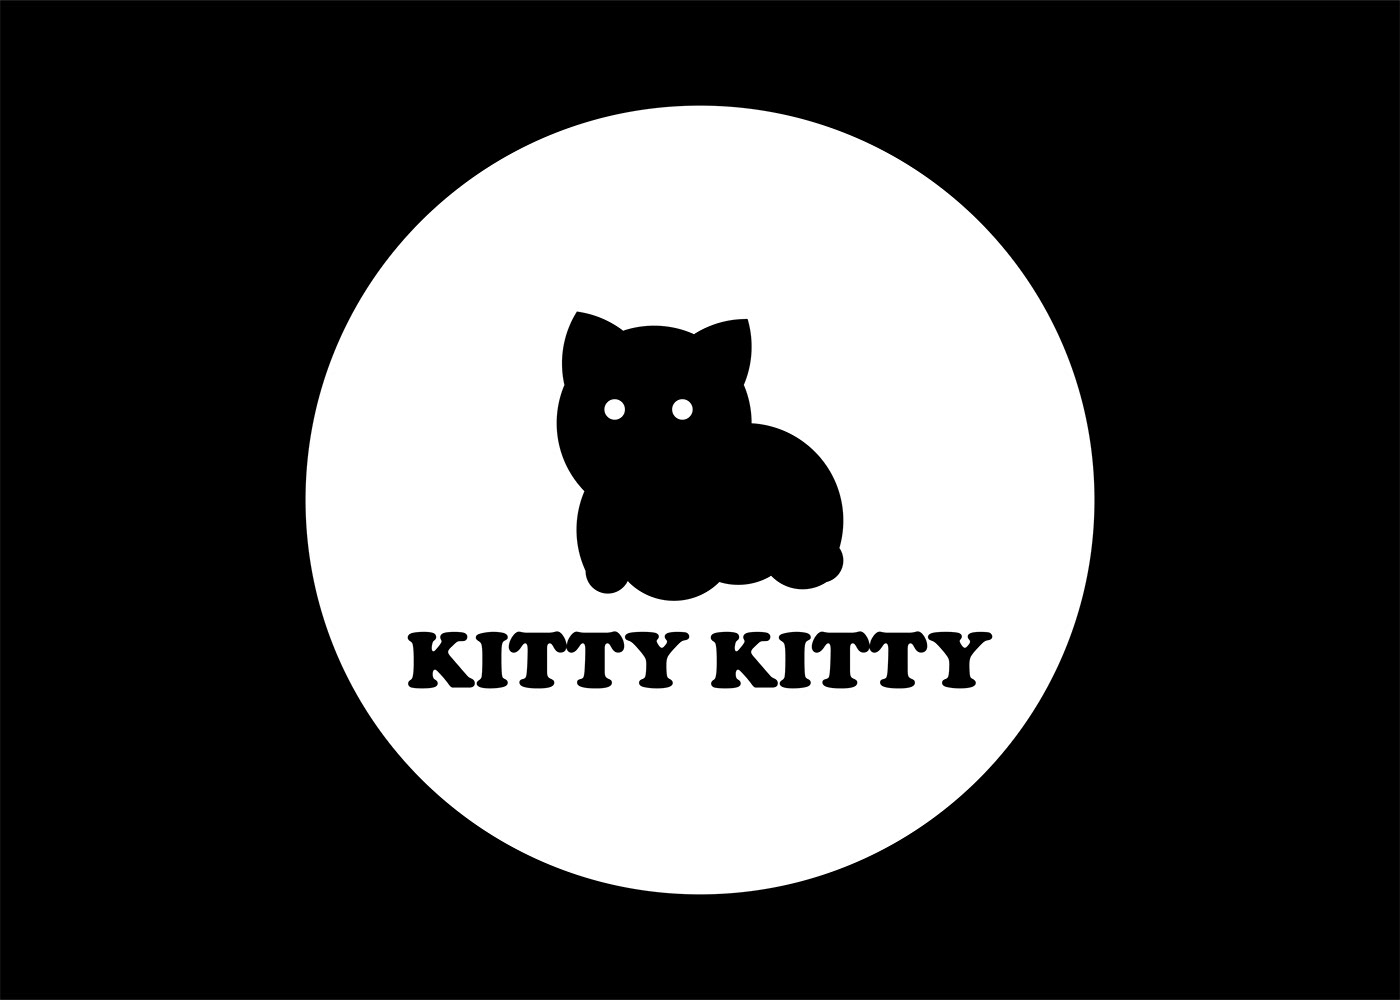 cat logo animal logo Pet pet logo pethouse pussycat Black Cat cats Cat